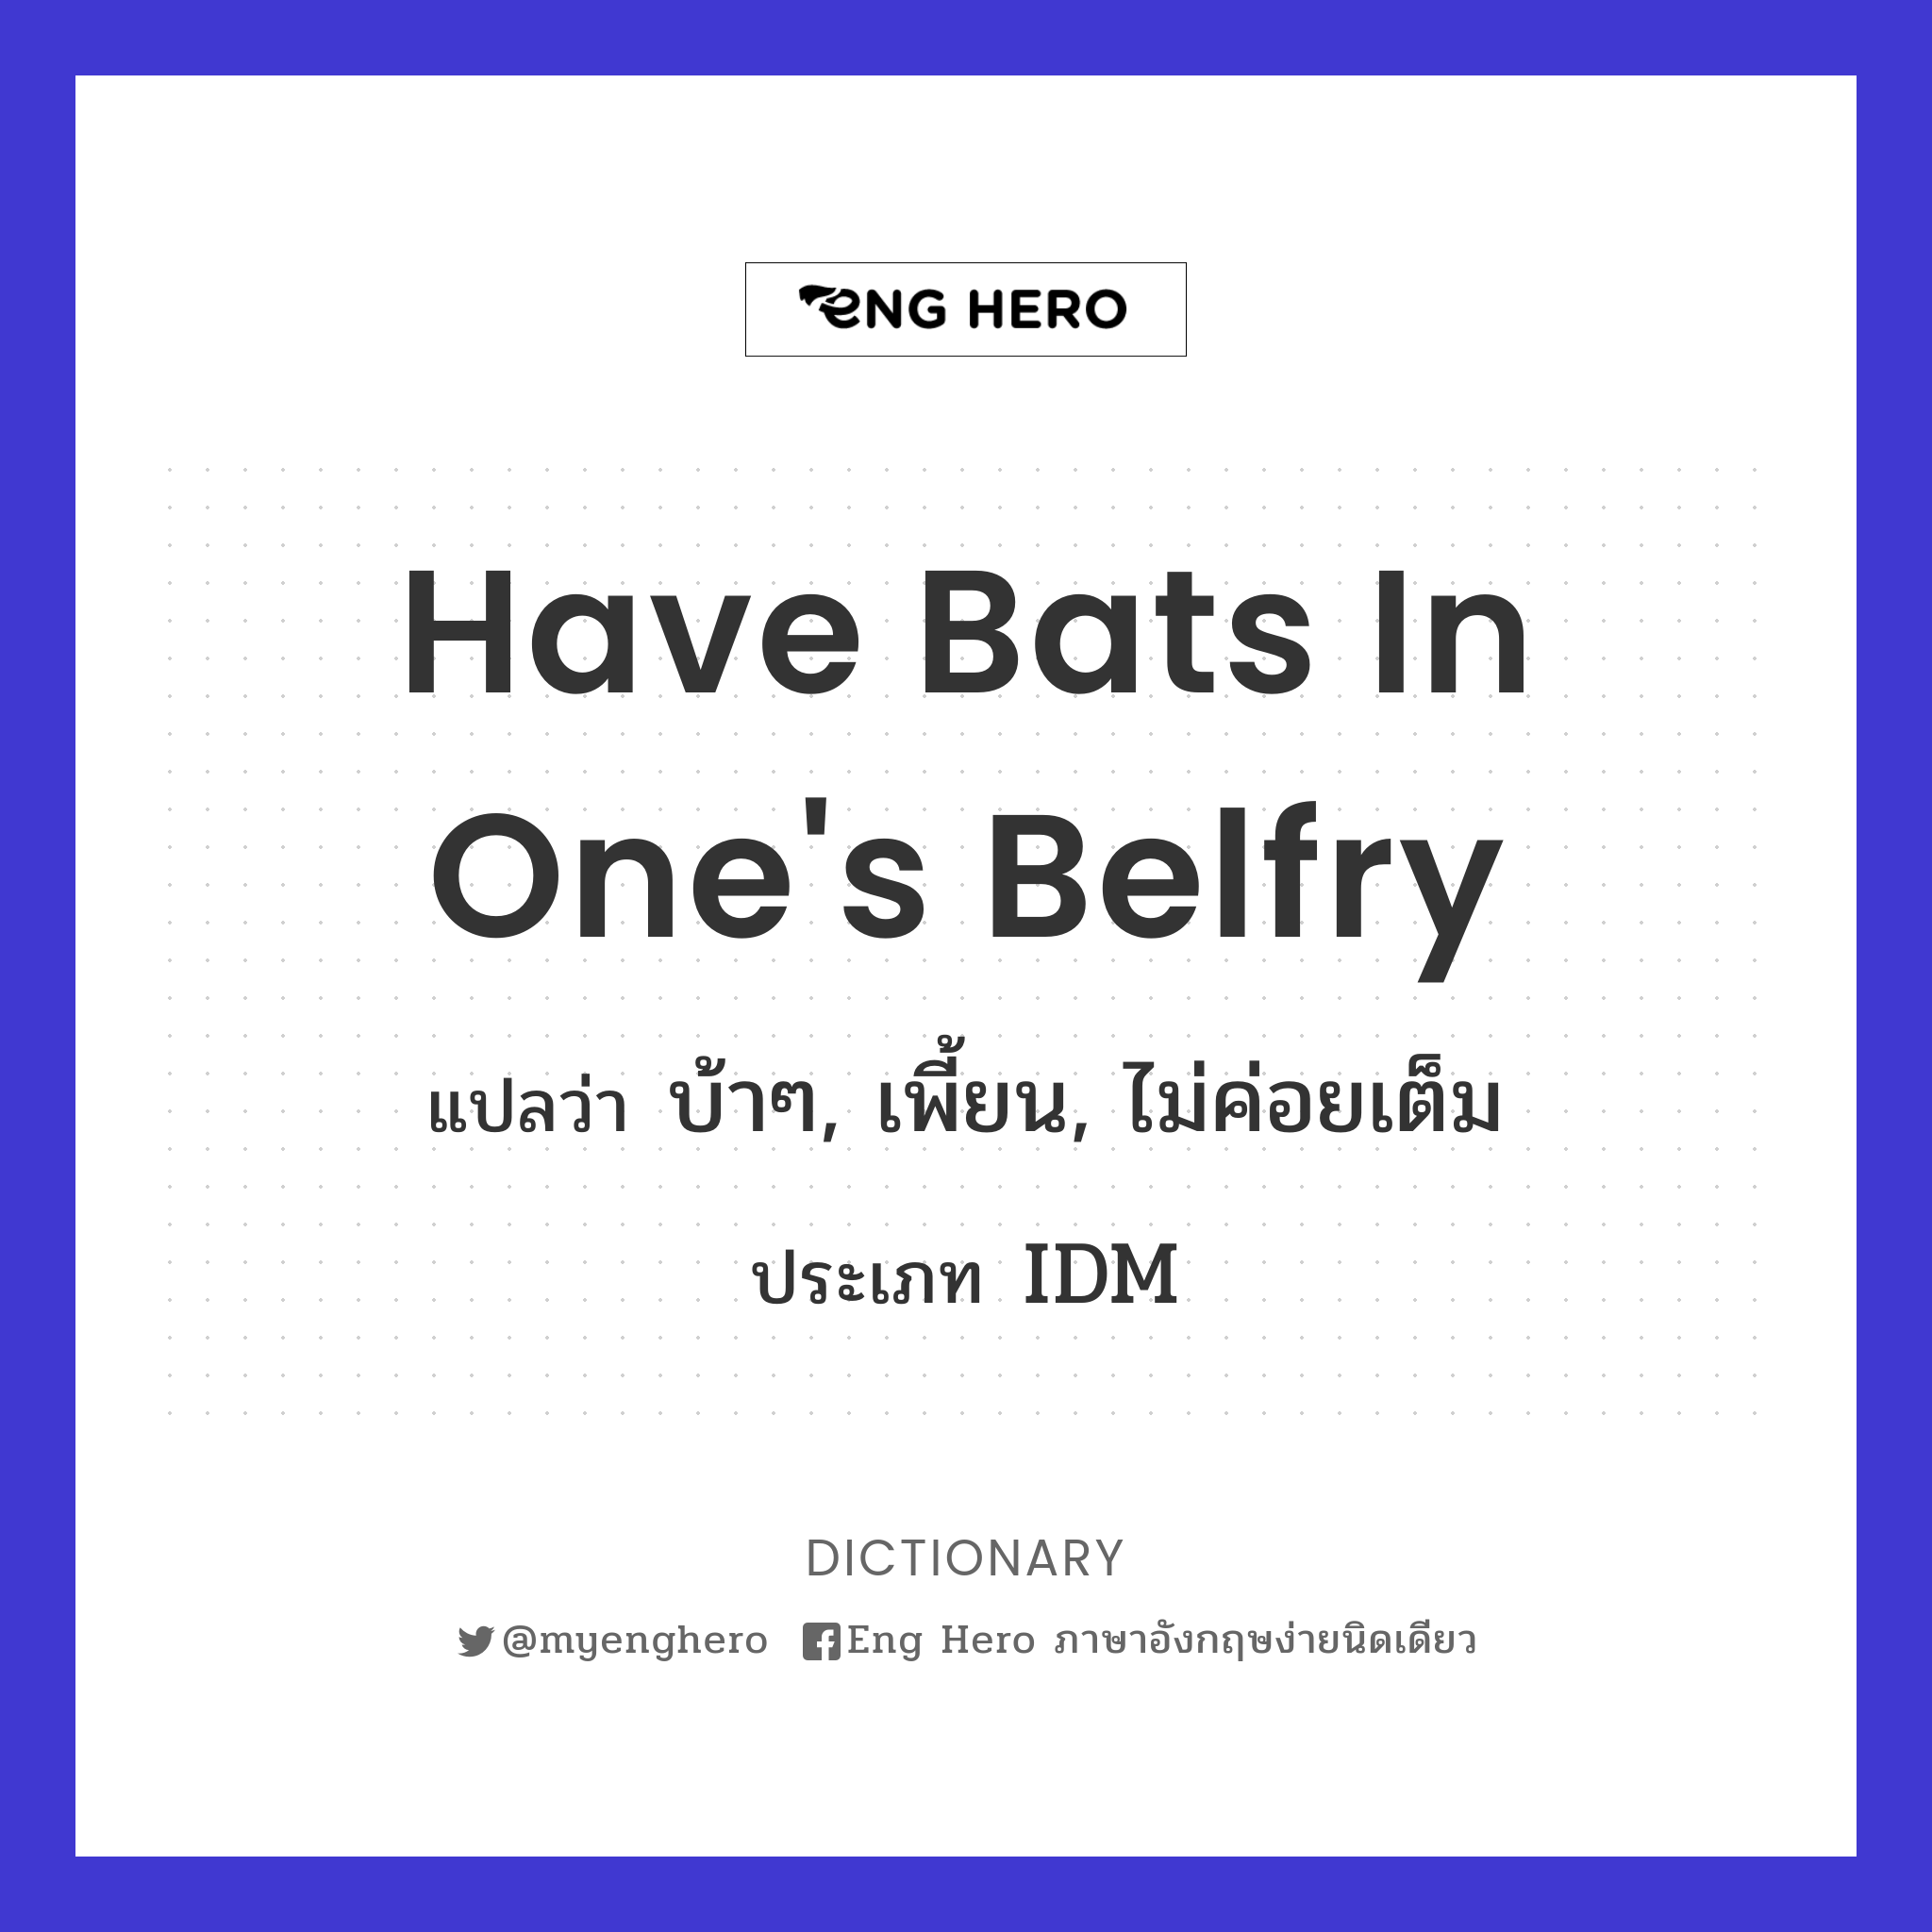 have bats in one's belfry